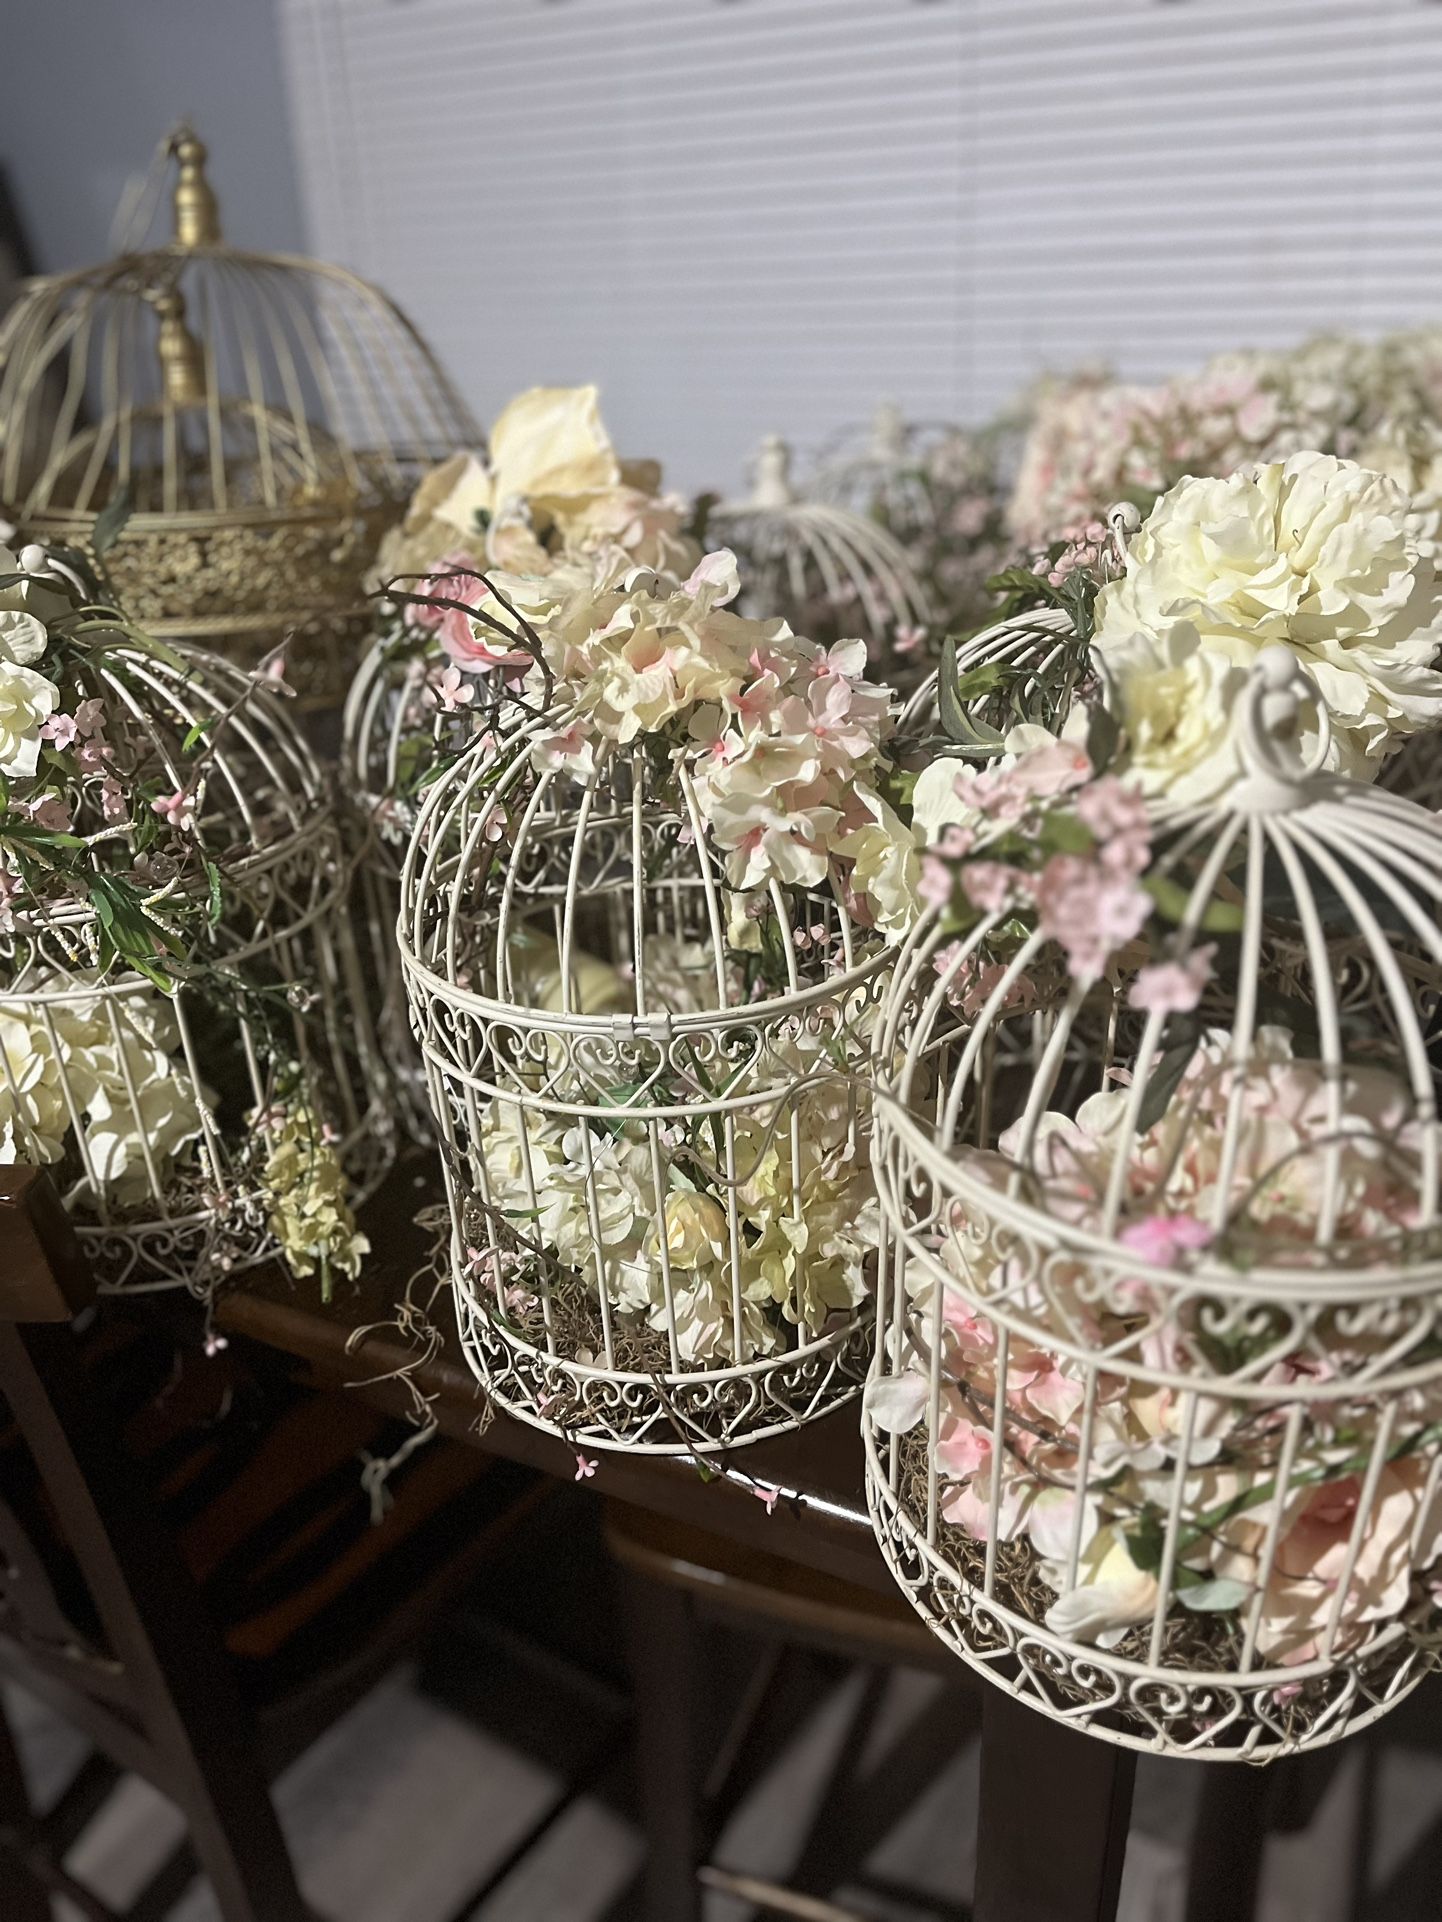 Decorate Bird Cages